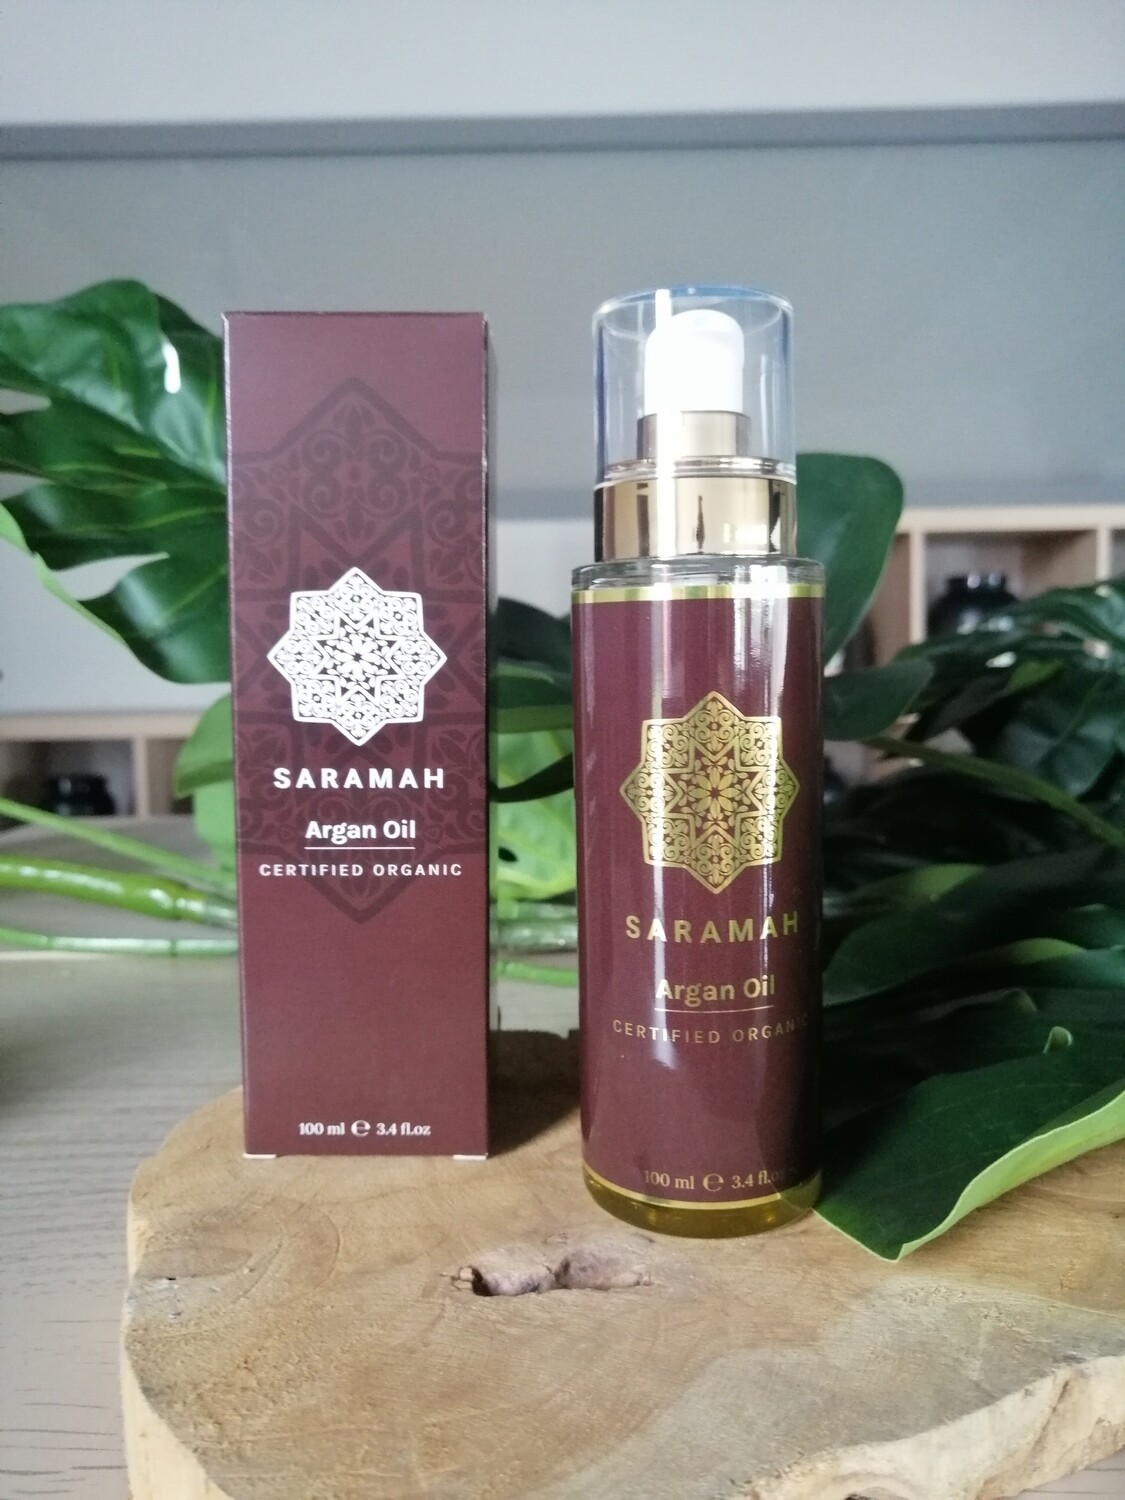 Saramah Argan Oil